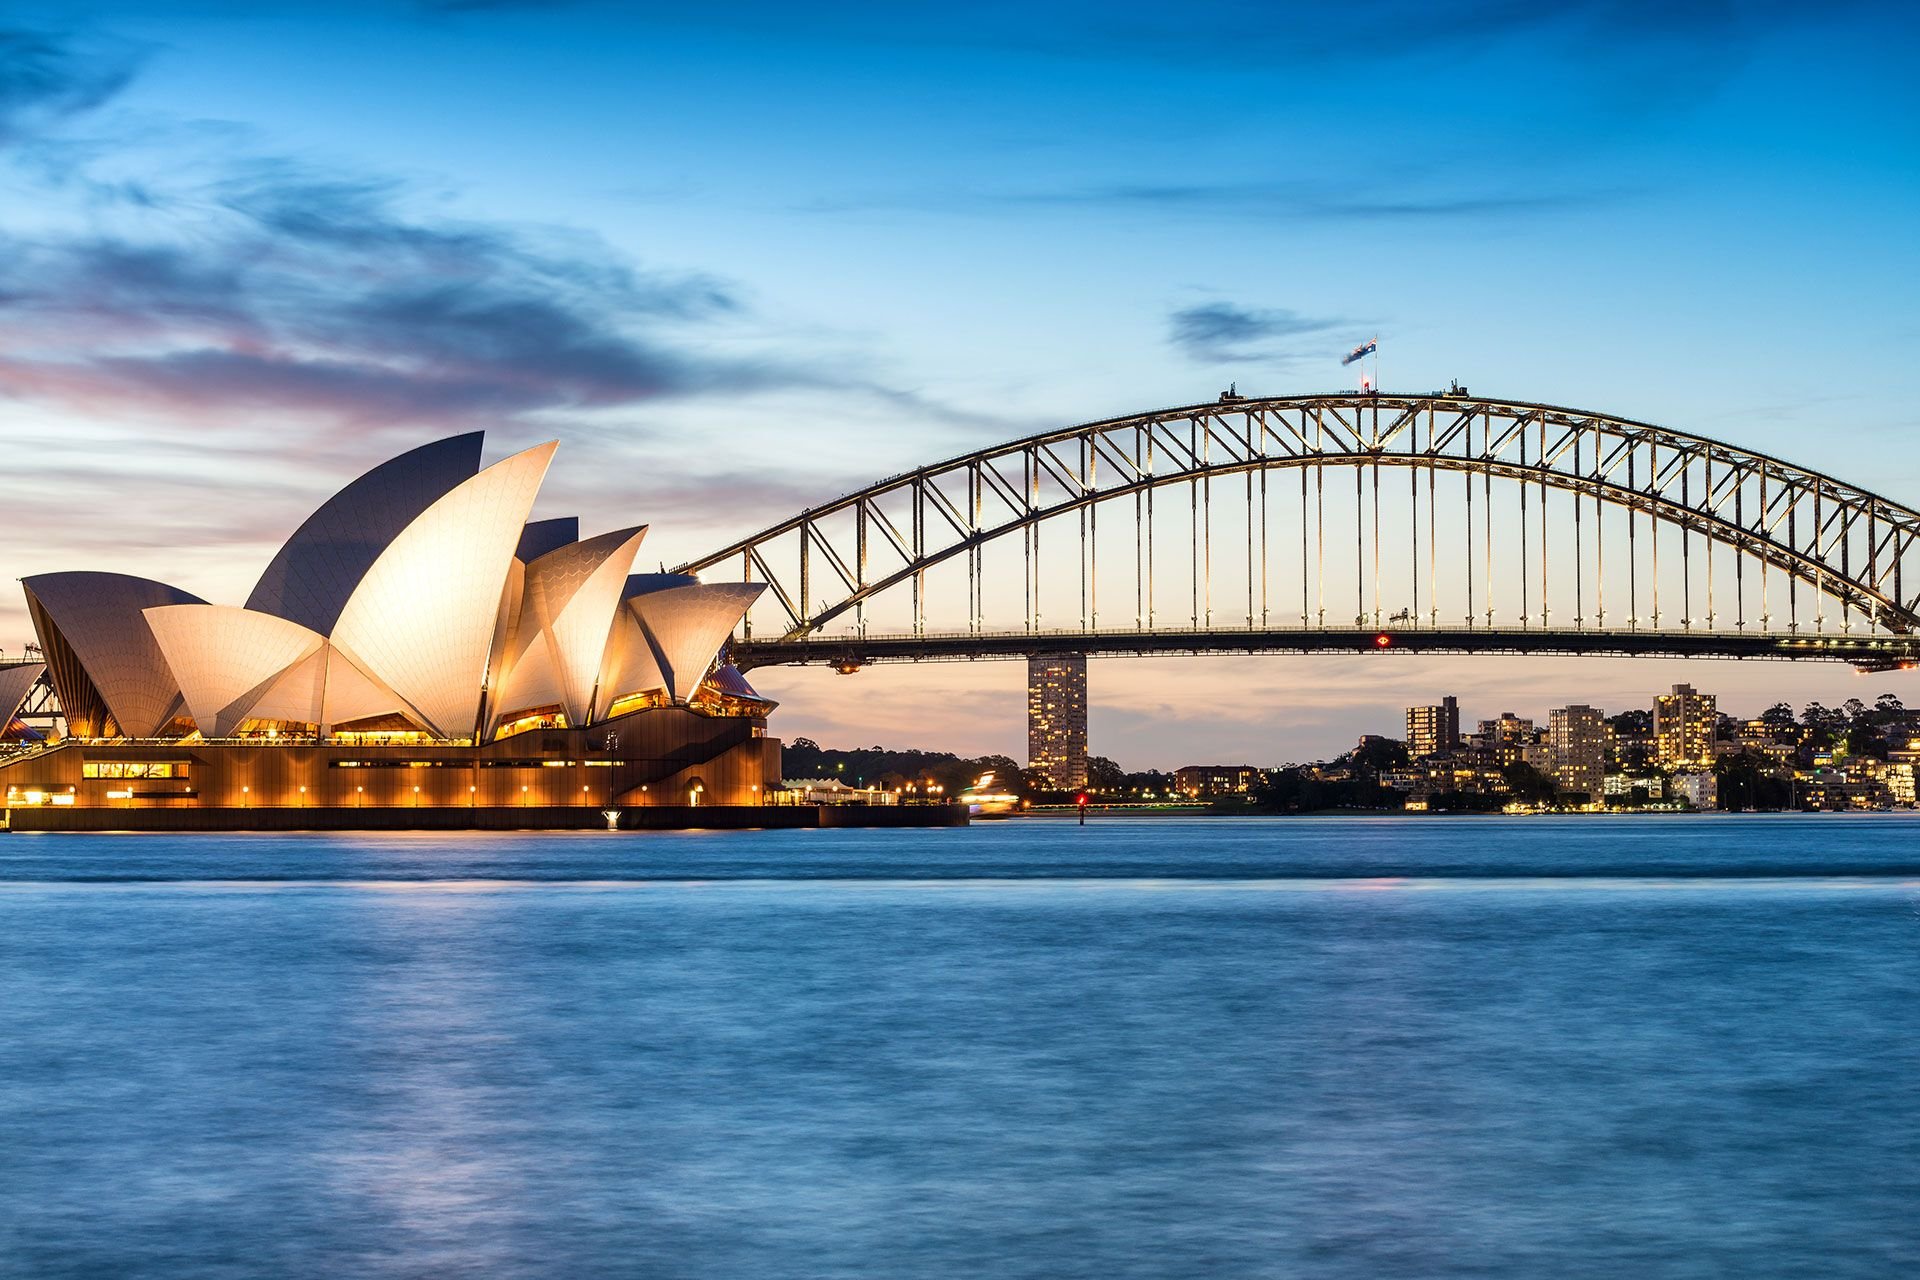 Sydney australia. Сиднейский оперный театр и Харбор-бридж. Сидней Роулетт. Австралия мост Харбор бридж (г. Сидней). Сидней мост и оперный театр.